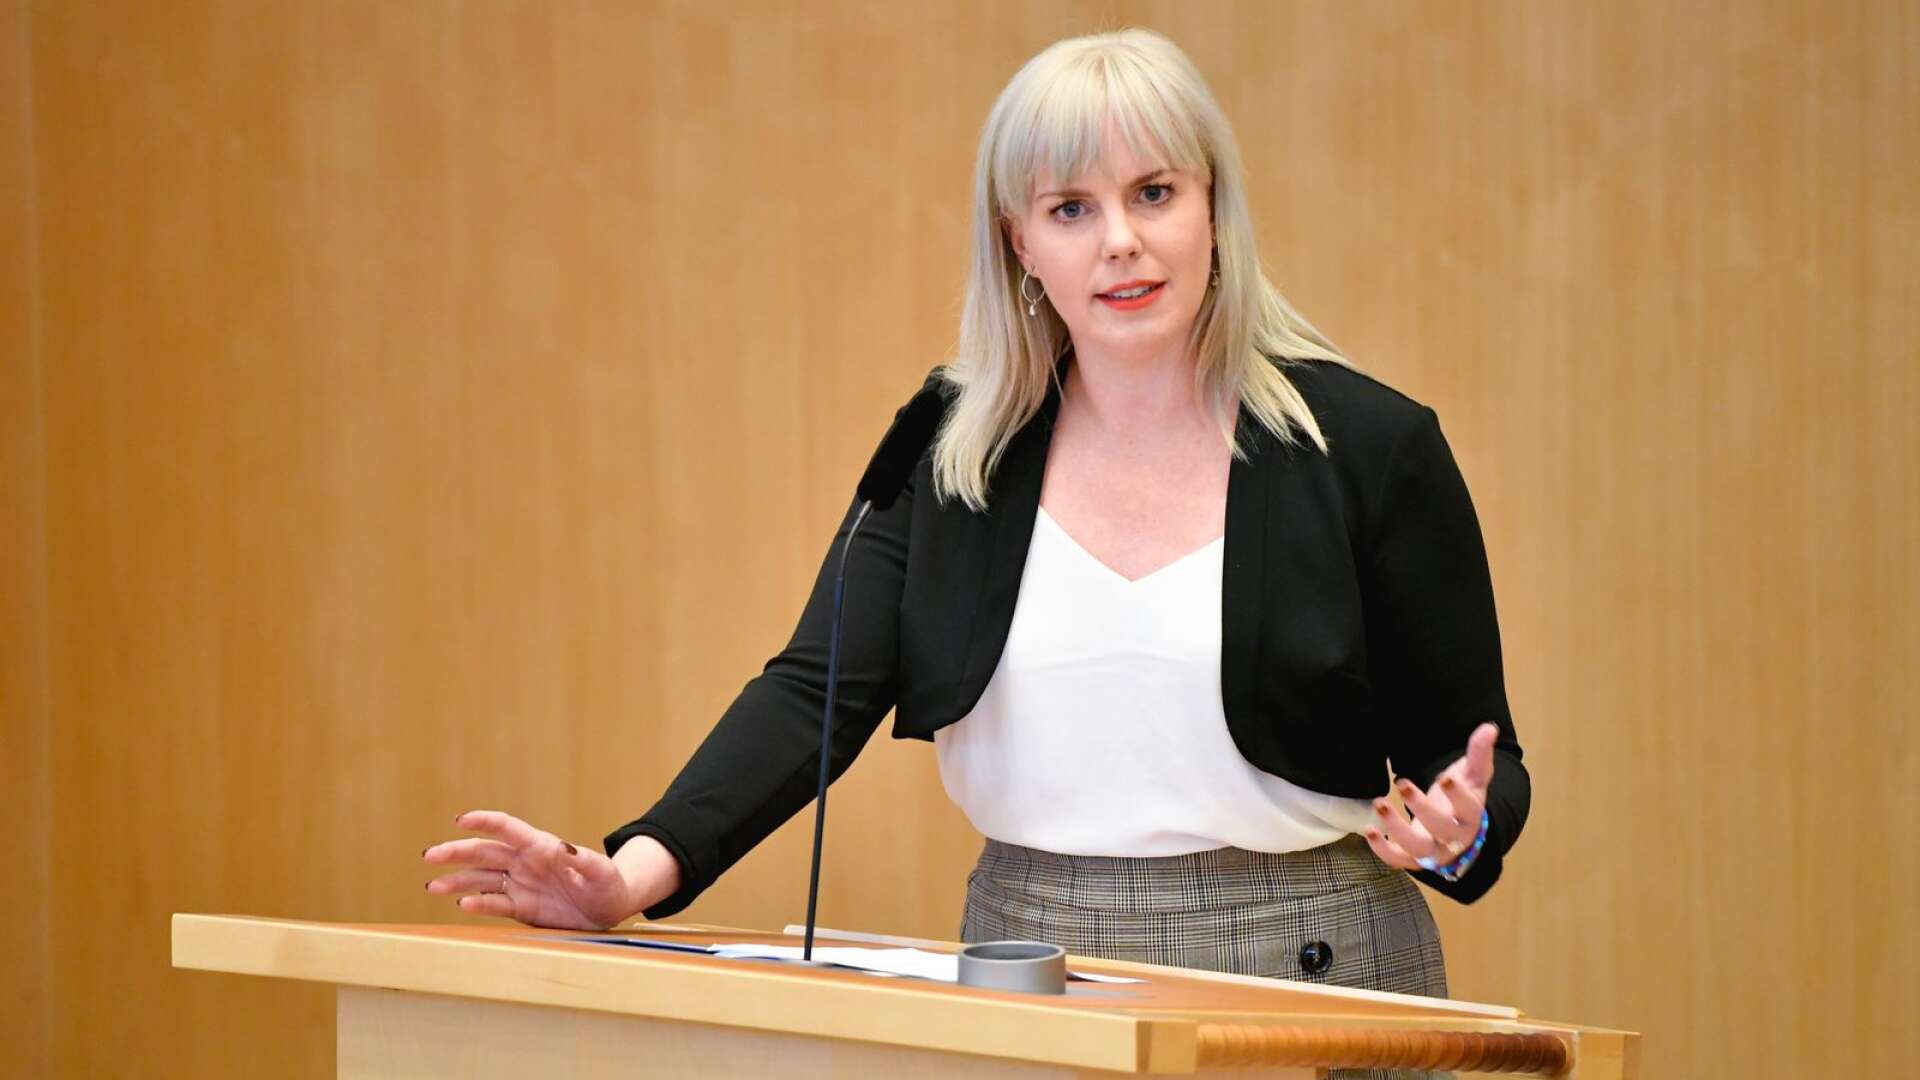 Enligt regeringens förslag skulle en sportskytt som missar att förnya en licens bli omedelbart häktad och dömd för grovt vapenbrott, skriver Linda Snecker (bilden), Gudrun Nordborg och Håkan Svenneling.